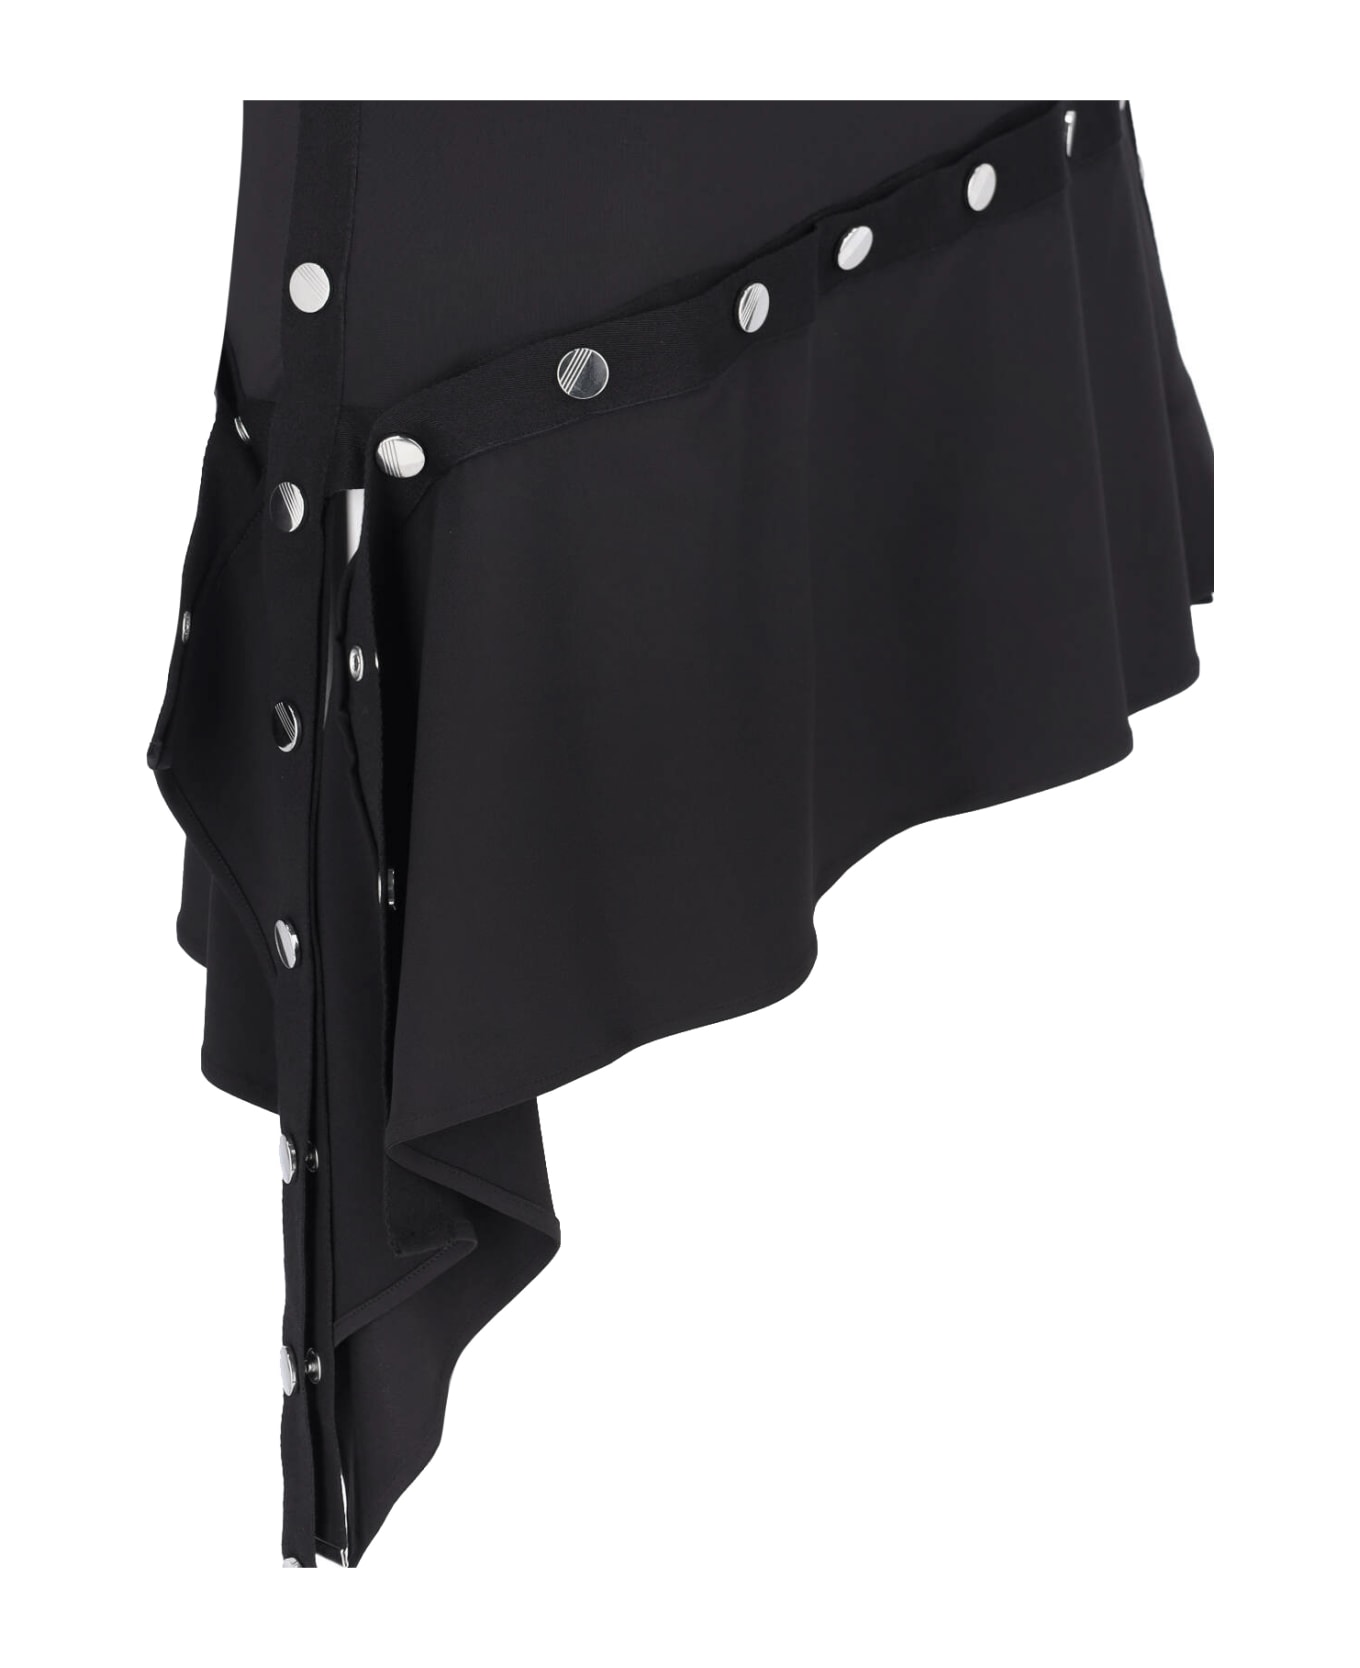 The Attico Dress - Black